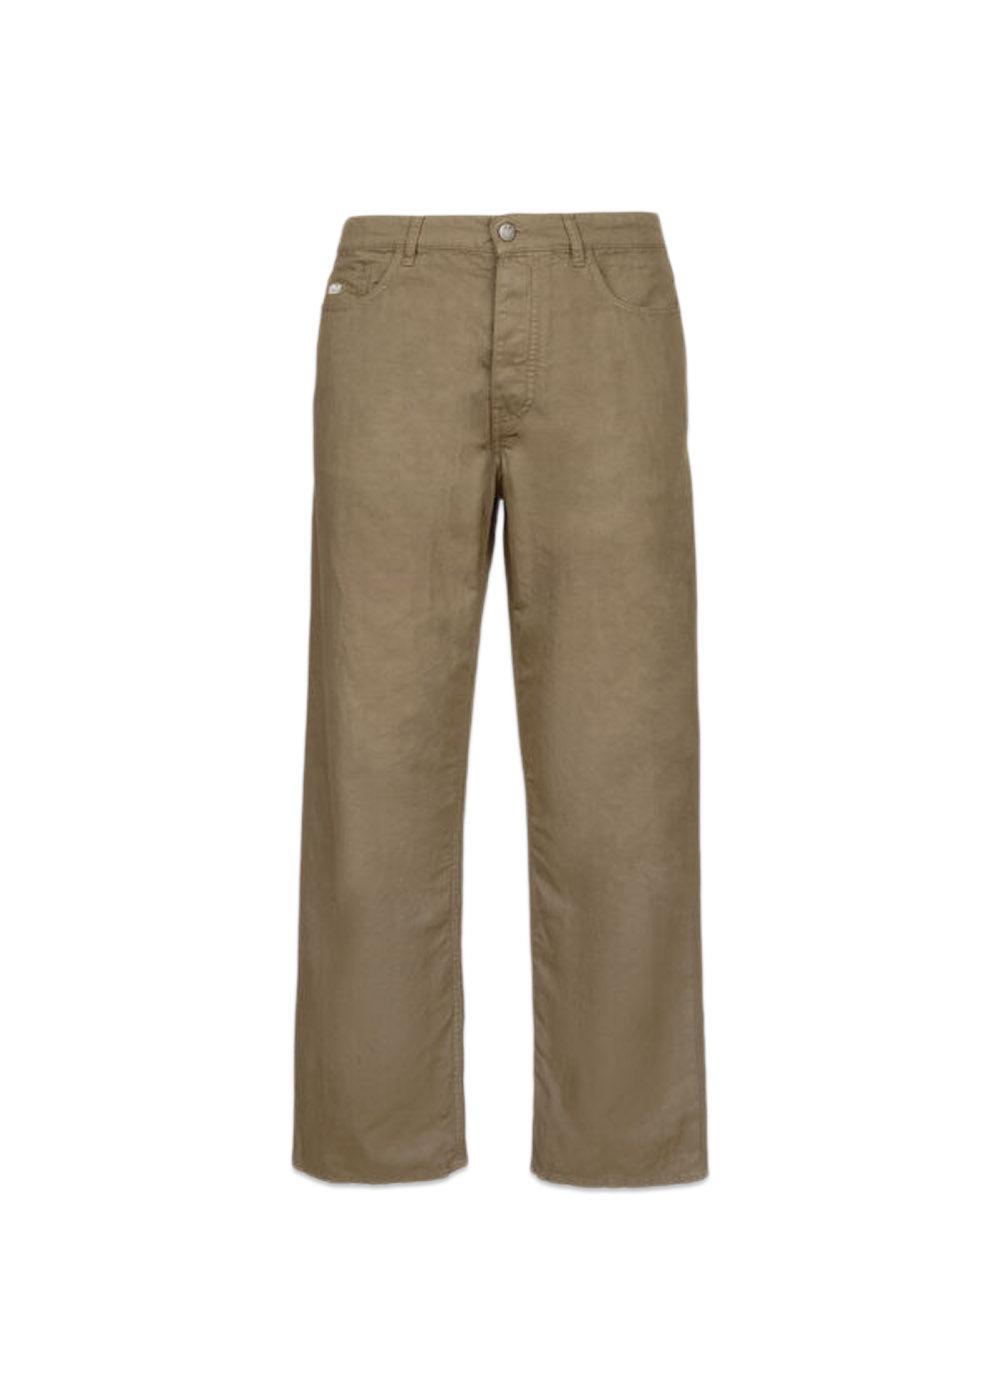 C.P. Companys Pants Five Pockets Cotton/Linen - Lead Grey. Køb bukser her.